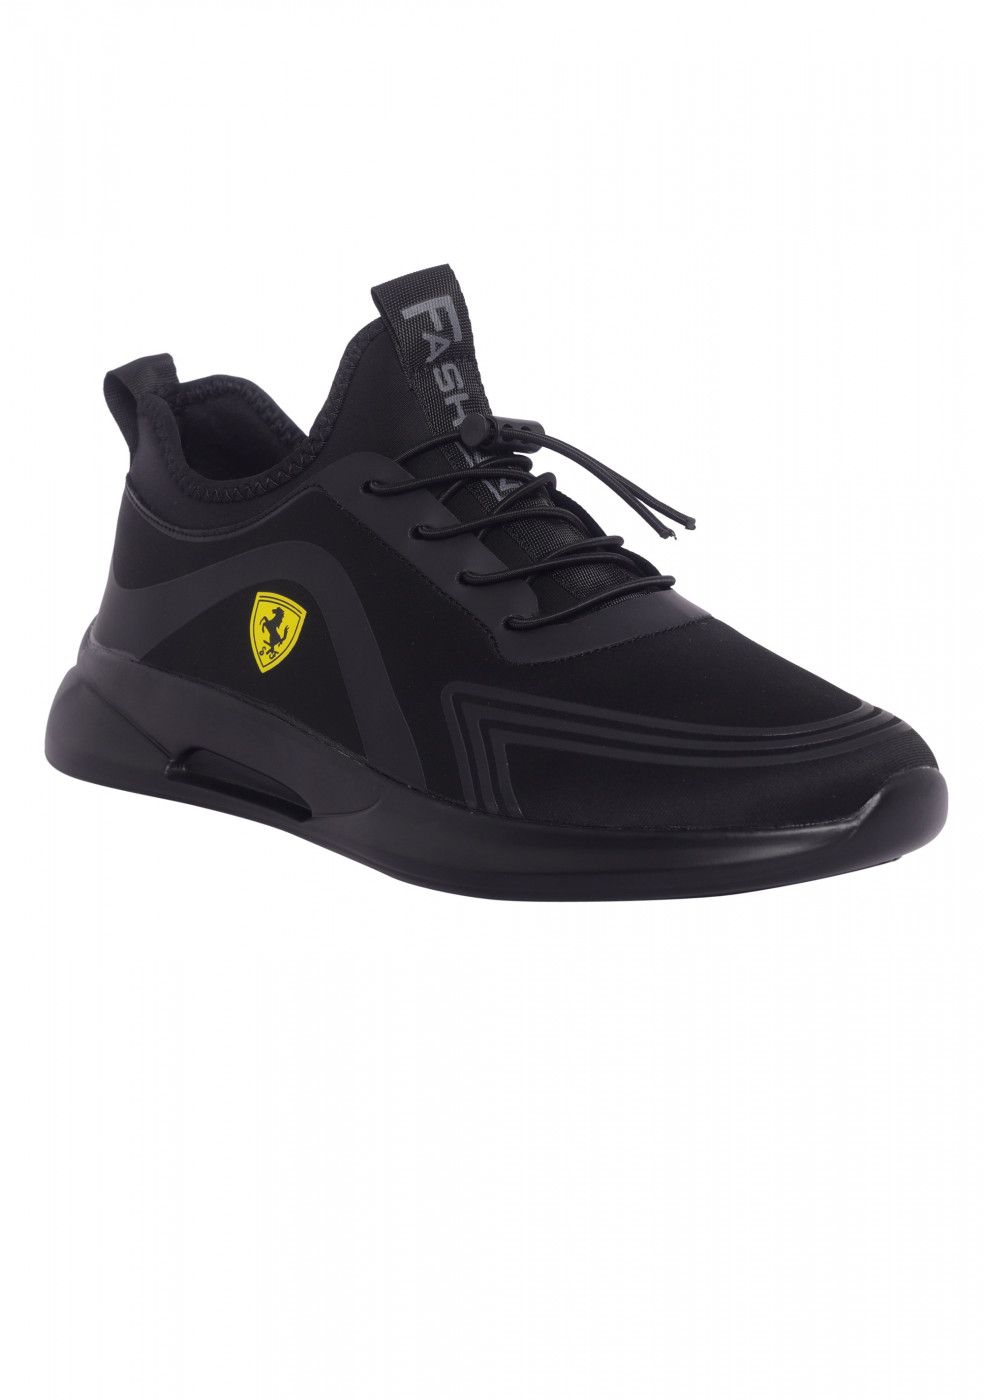 MAGNETT Black Sports Shoes For Men